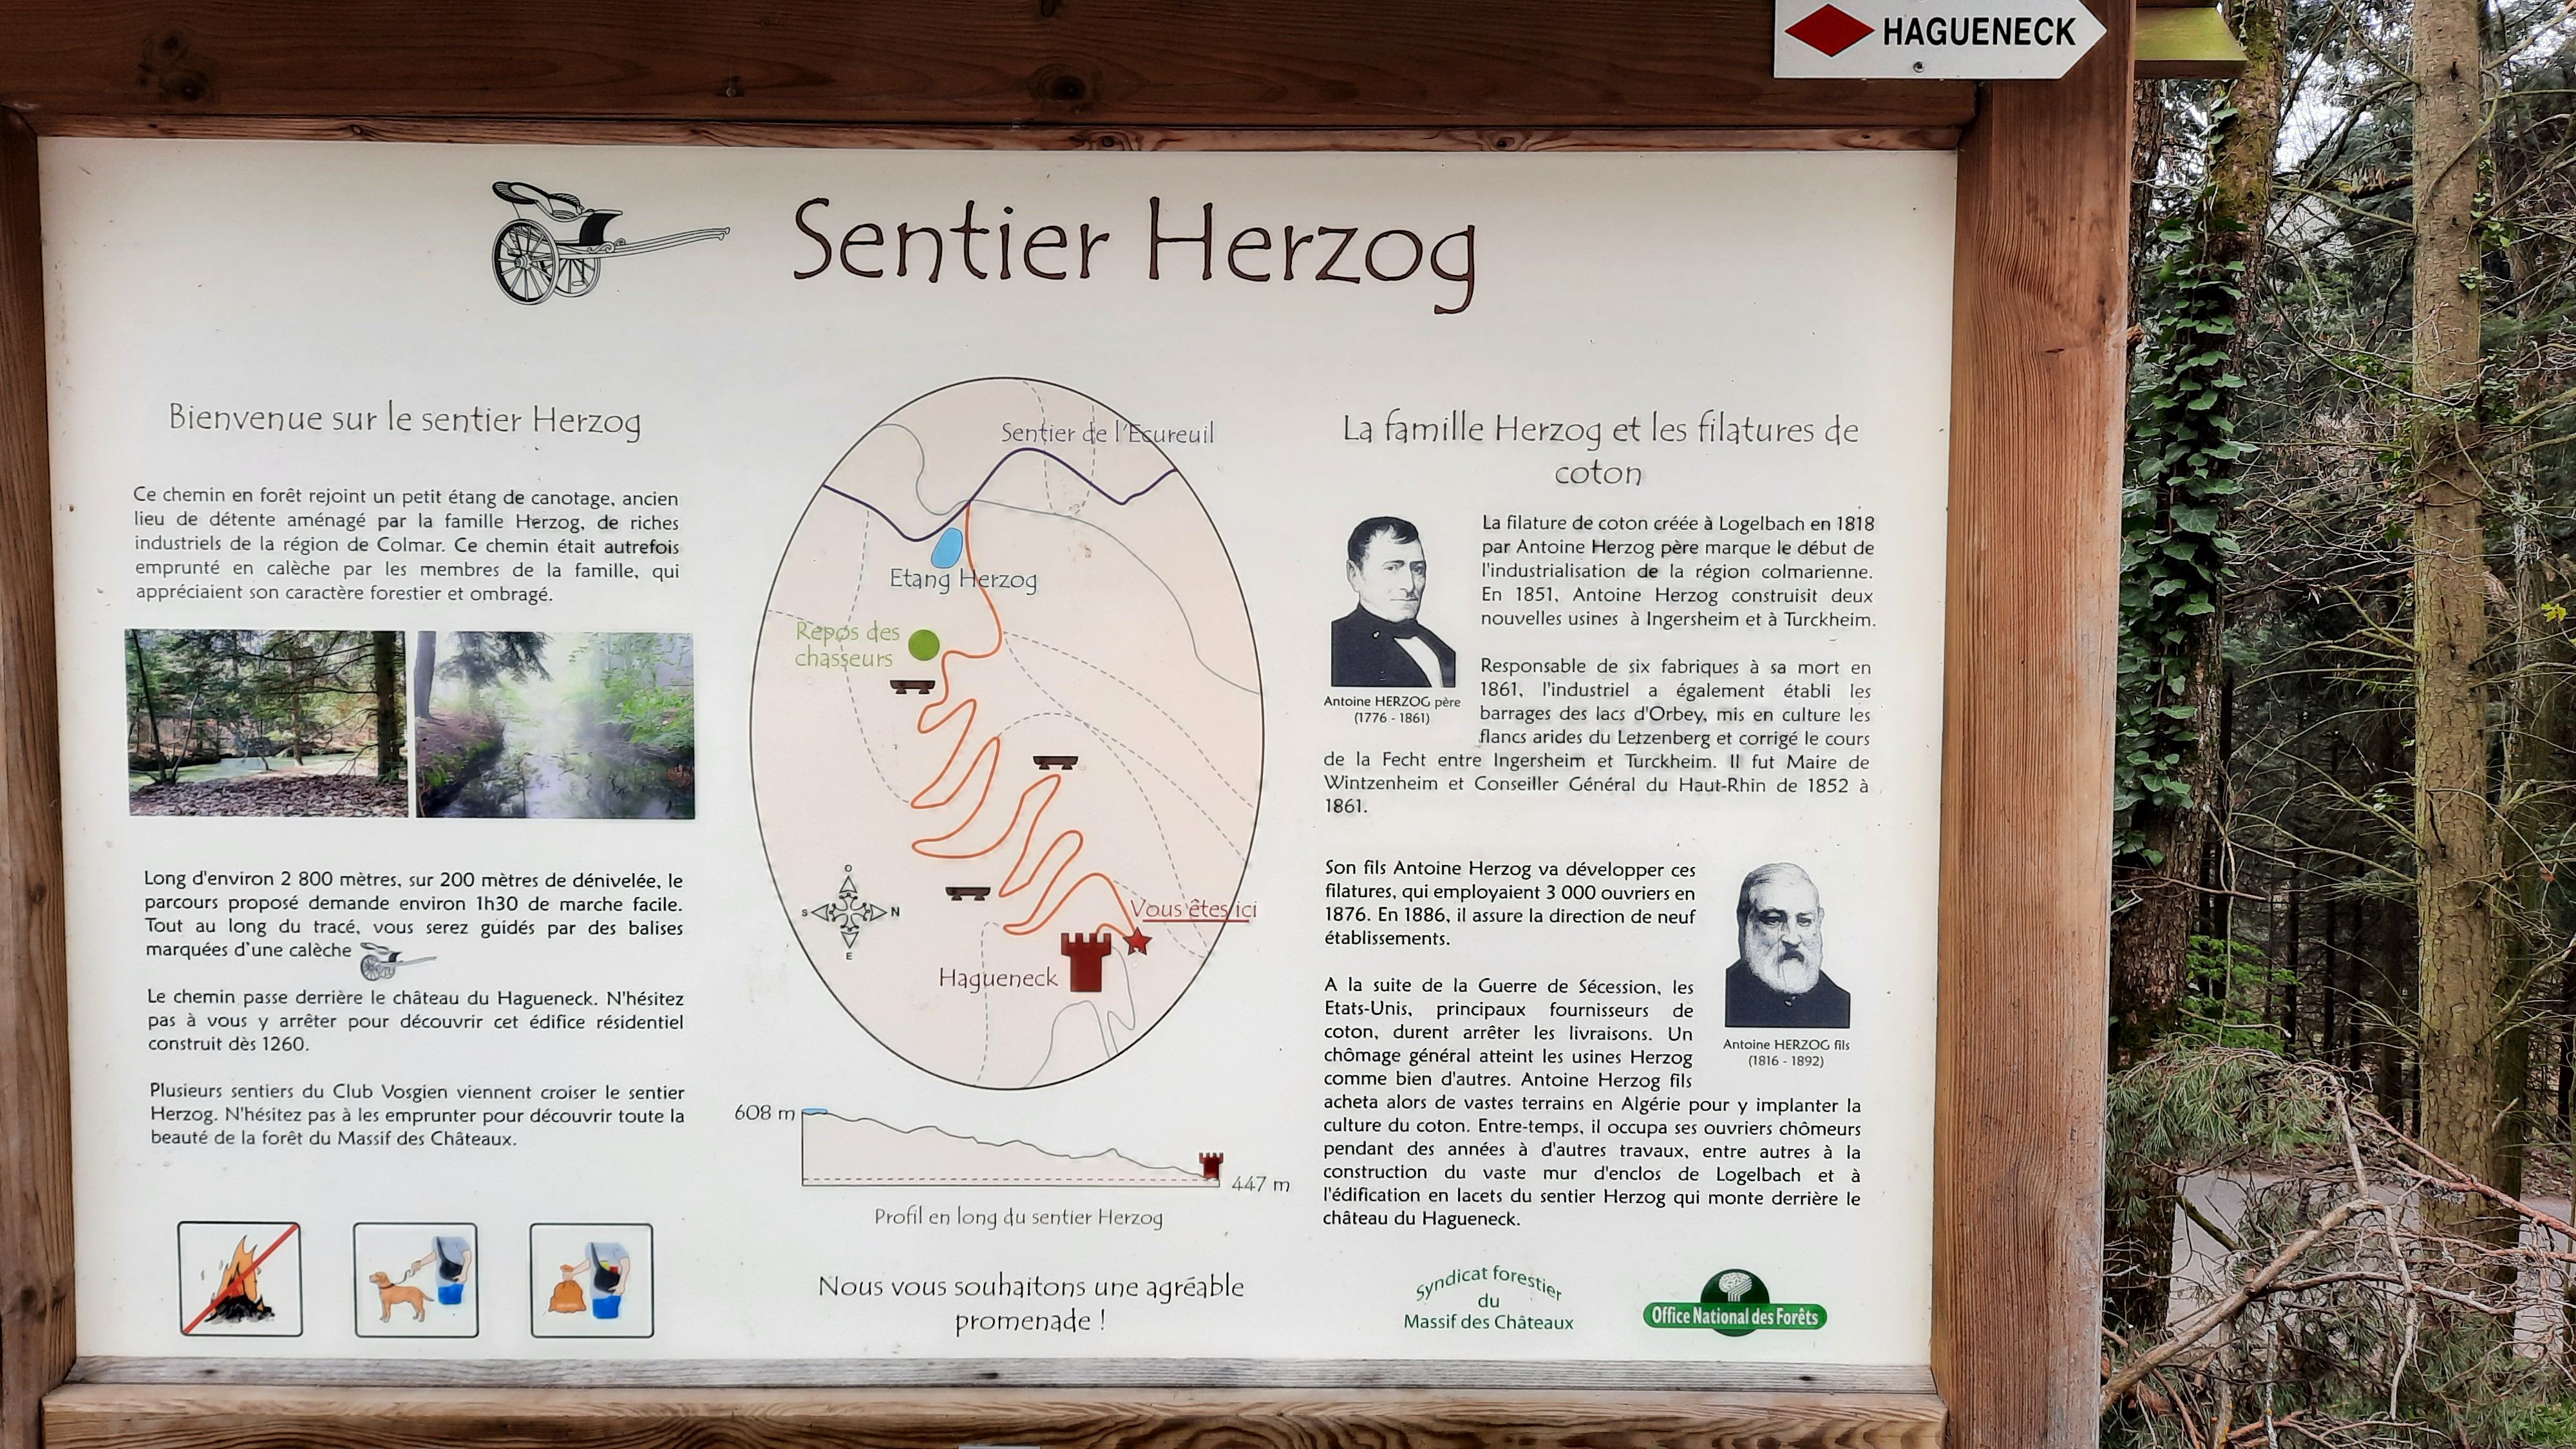 Sentier Herzog